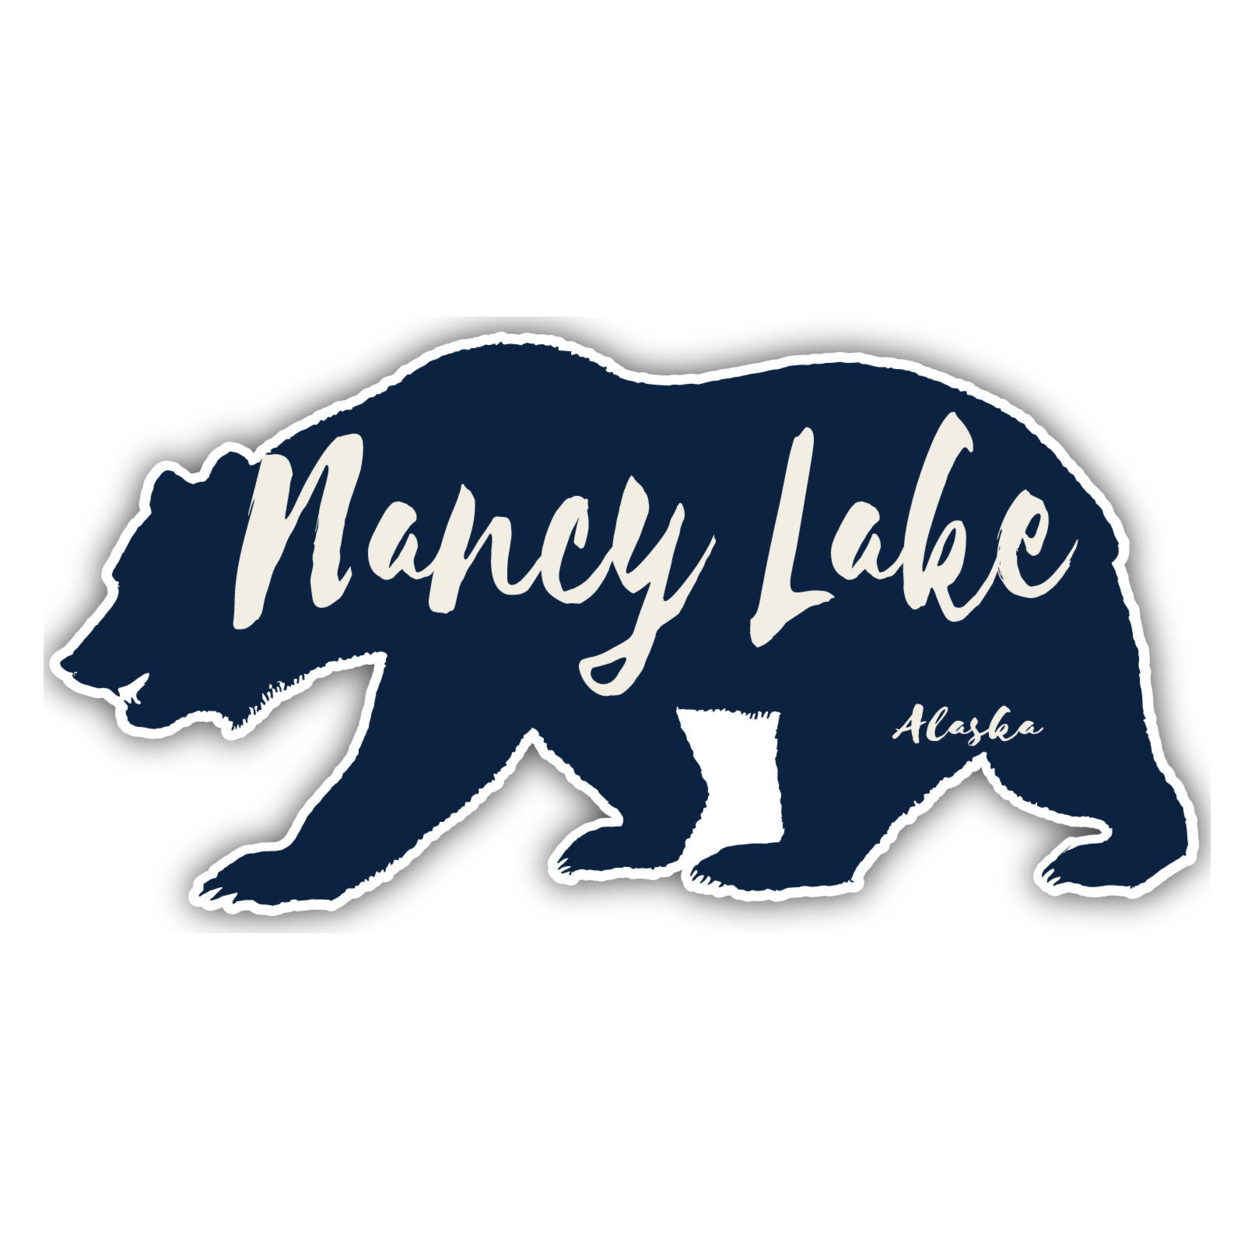 Nancy Lake Alaska Souvenir Decorative Stickers (Choose Theme And Size) - Single Unit, 4-Inch, Bear